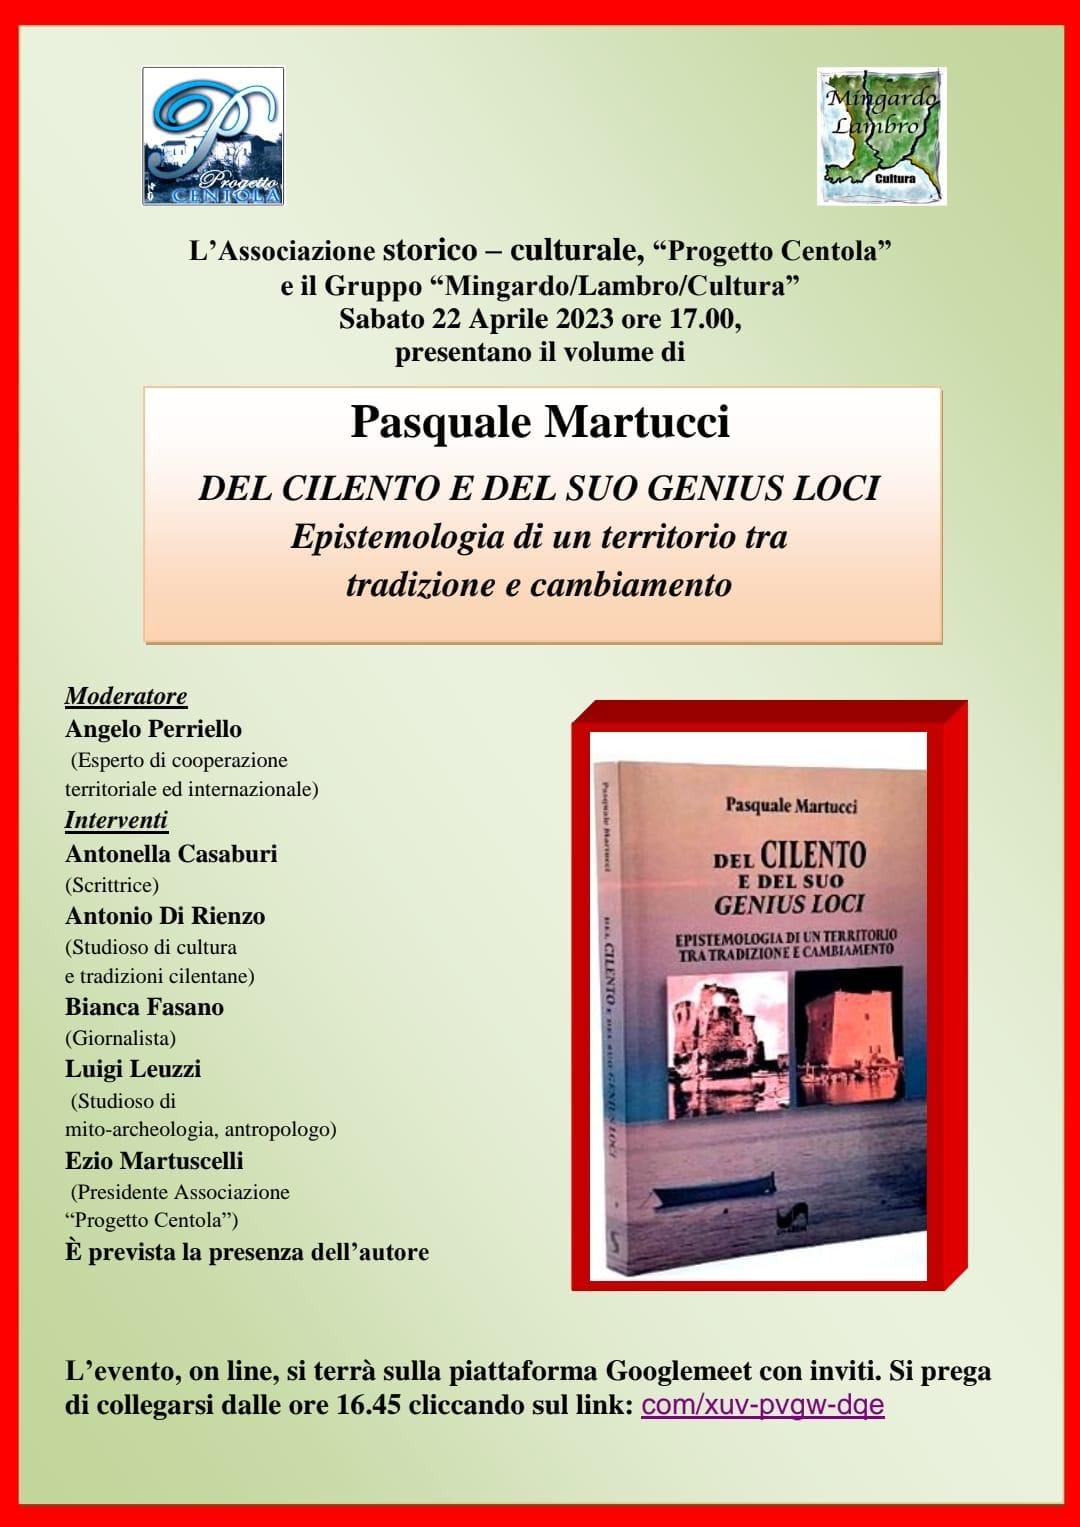 Online la presentazione del libro di Pasquale Martucci ‘Del Cilento e del suo genius loci’